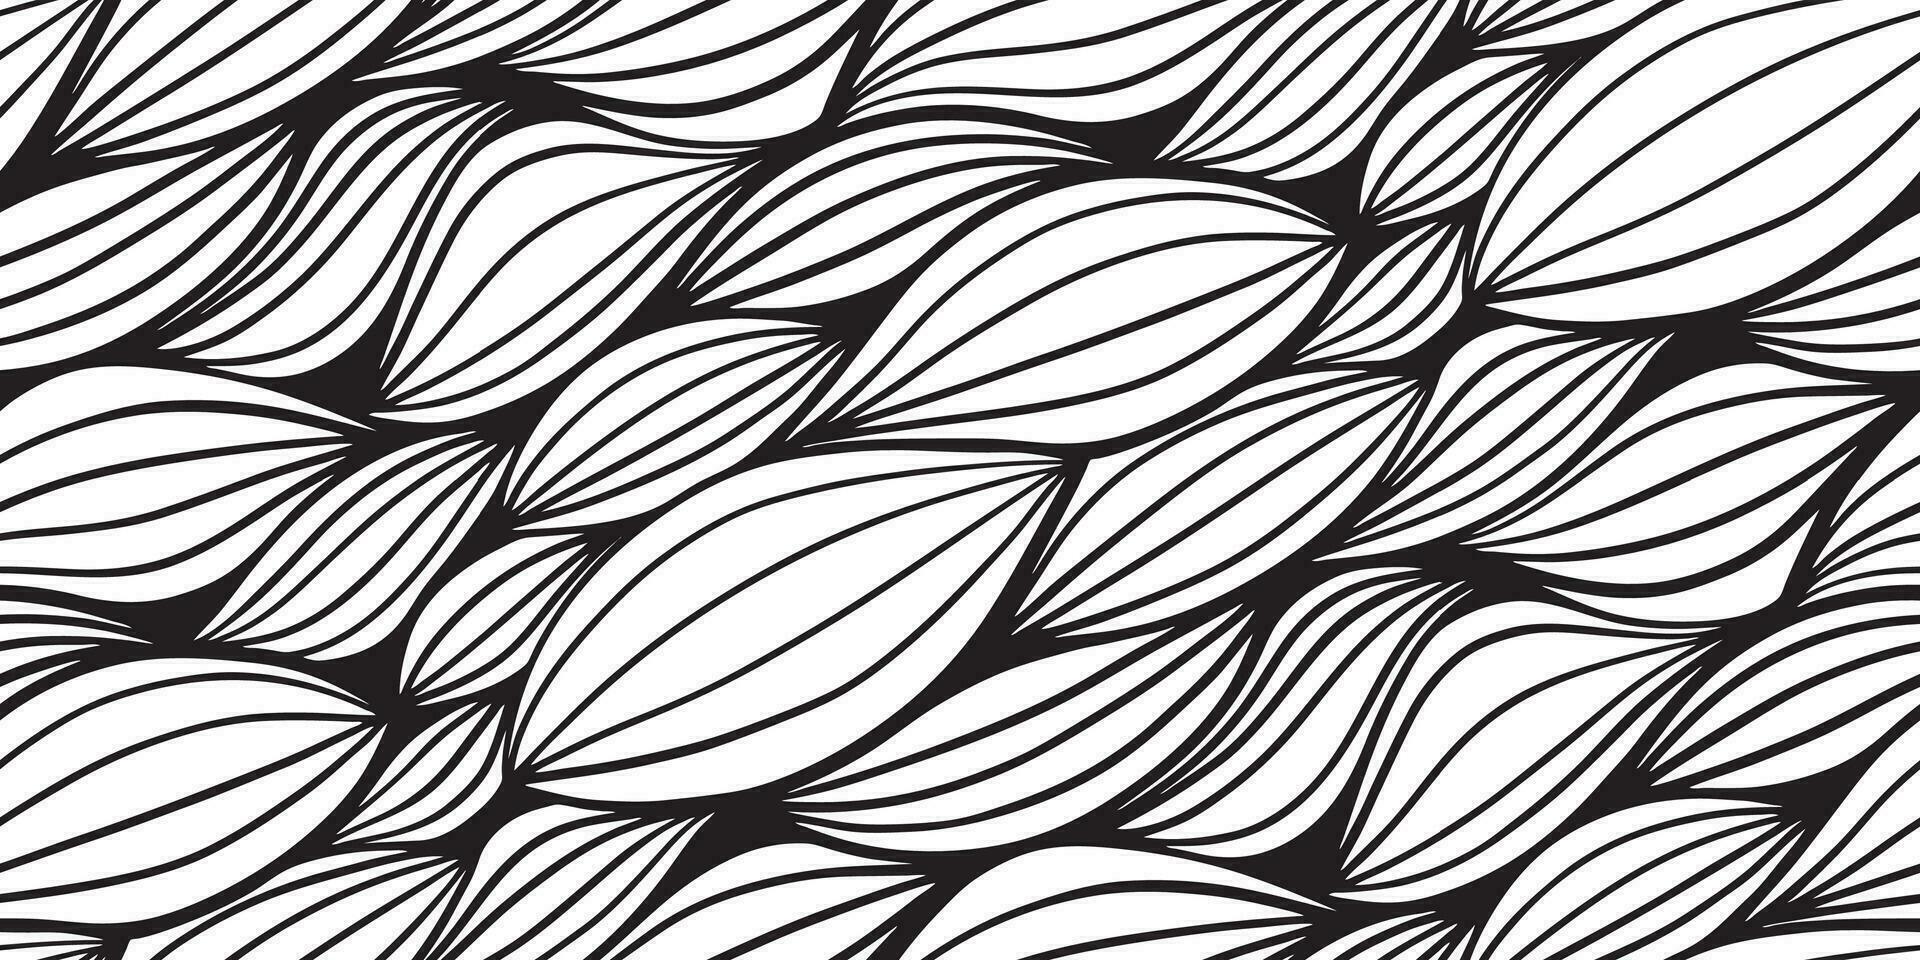 zwart en wit golven naadloos patroon voor kleding stof textiel ontwerp, hoofdkussen of inpakken. vector illustratie